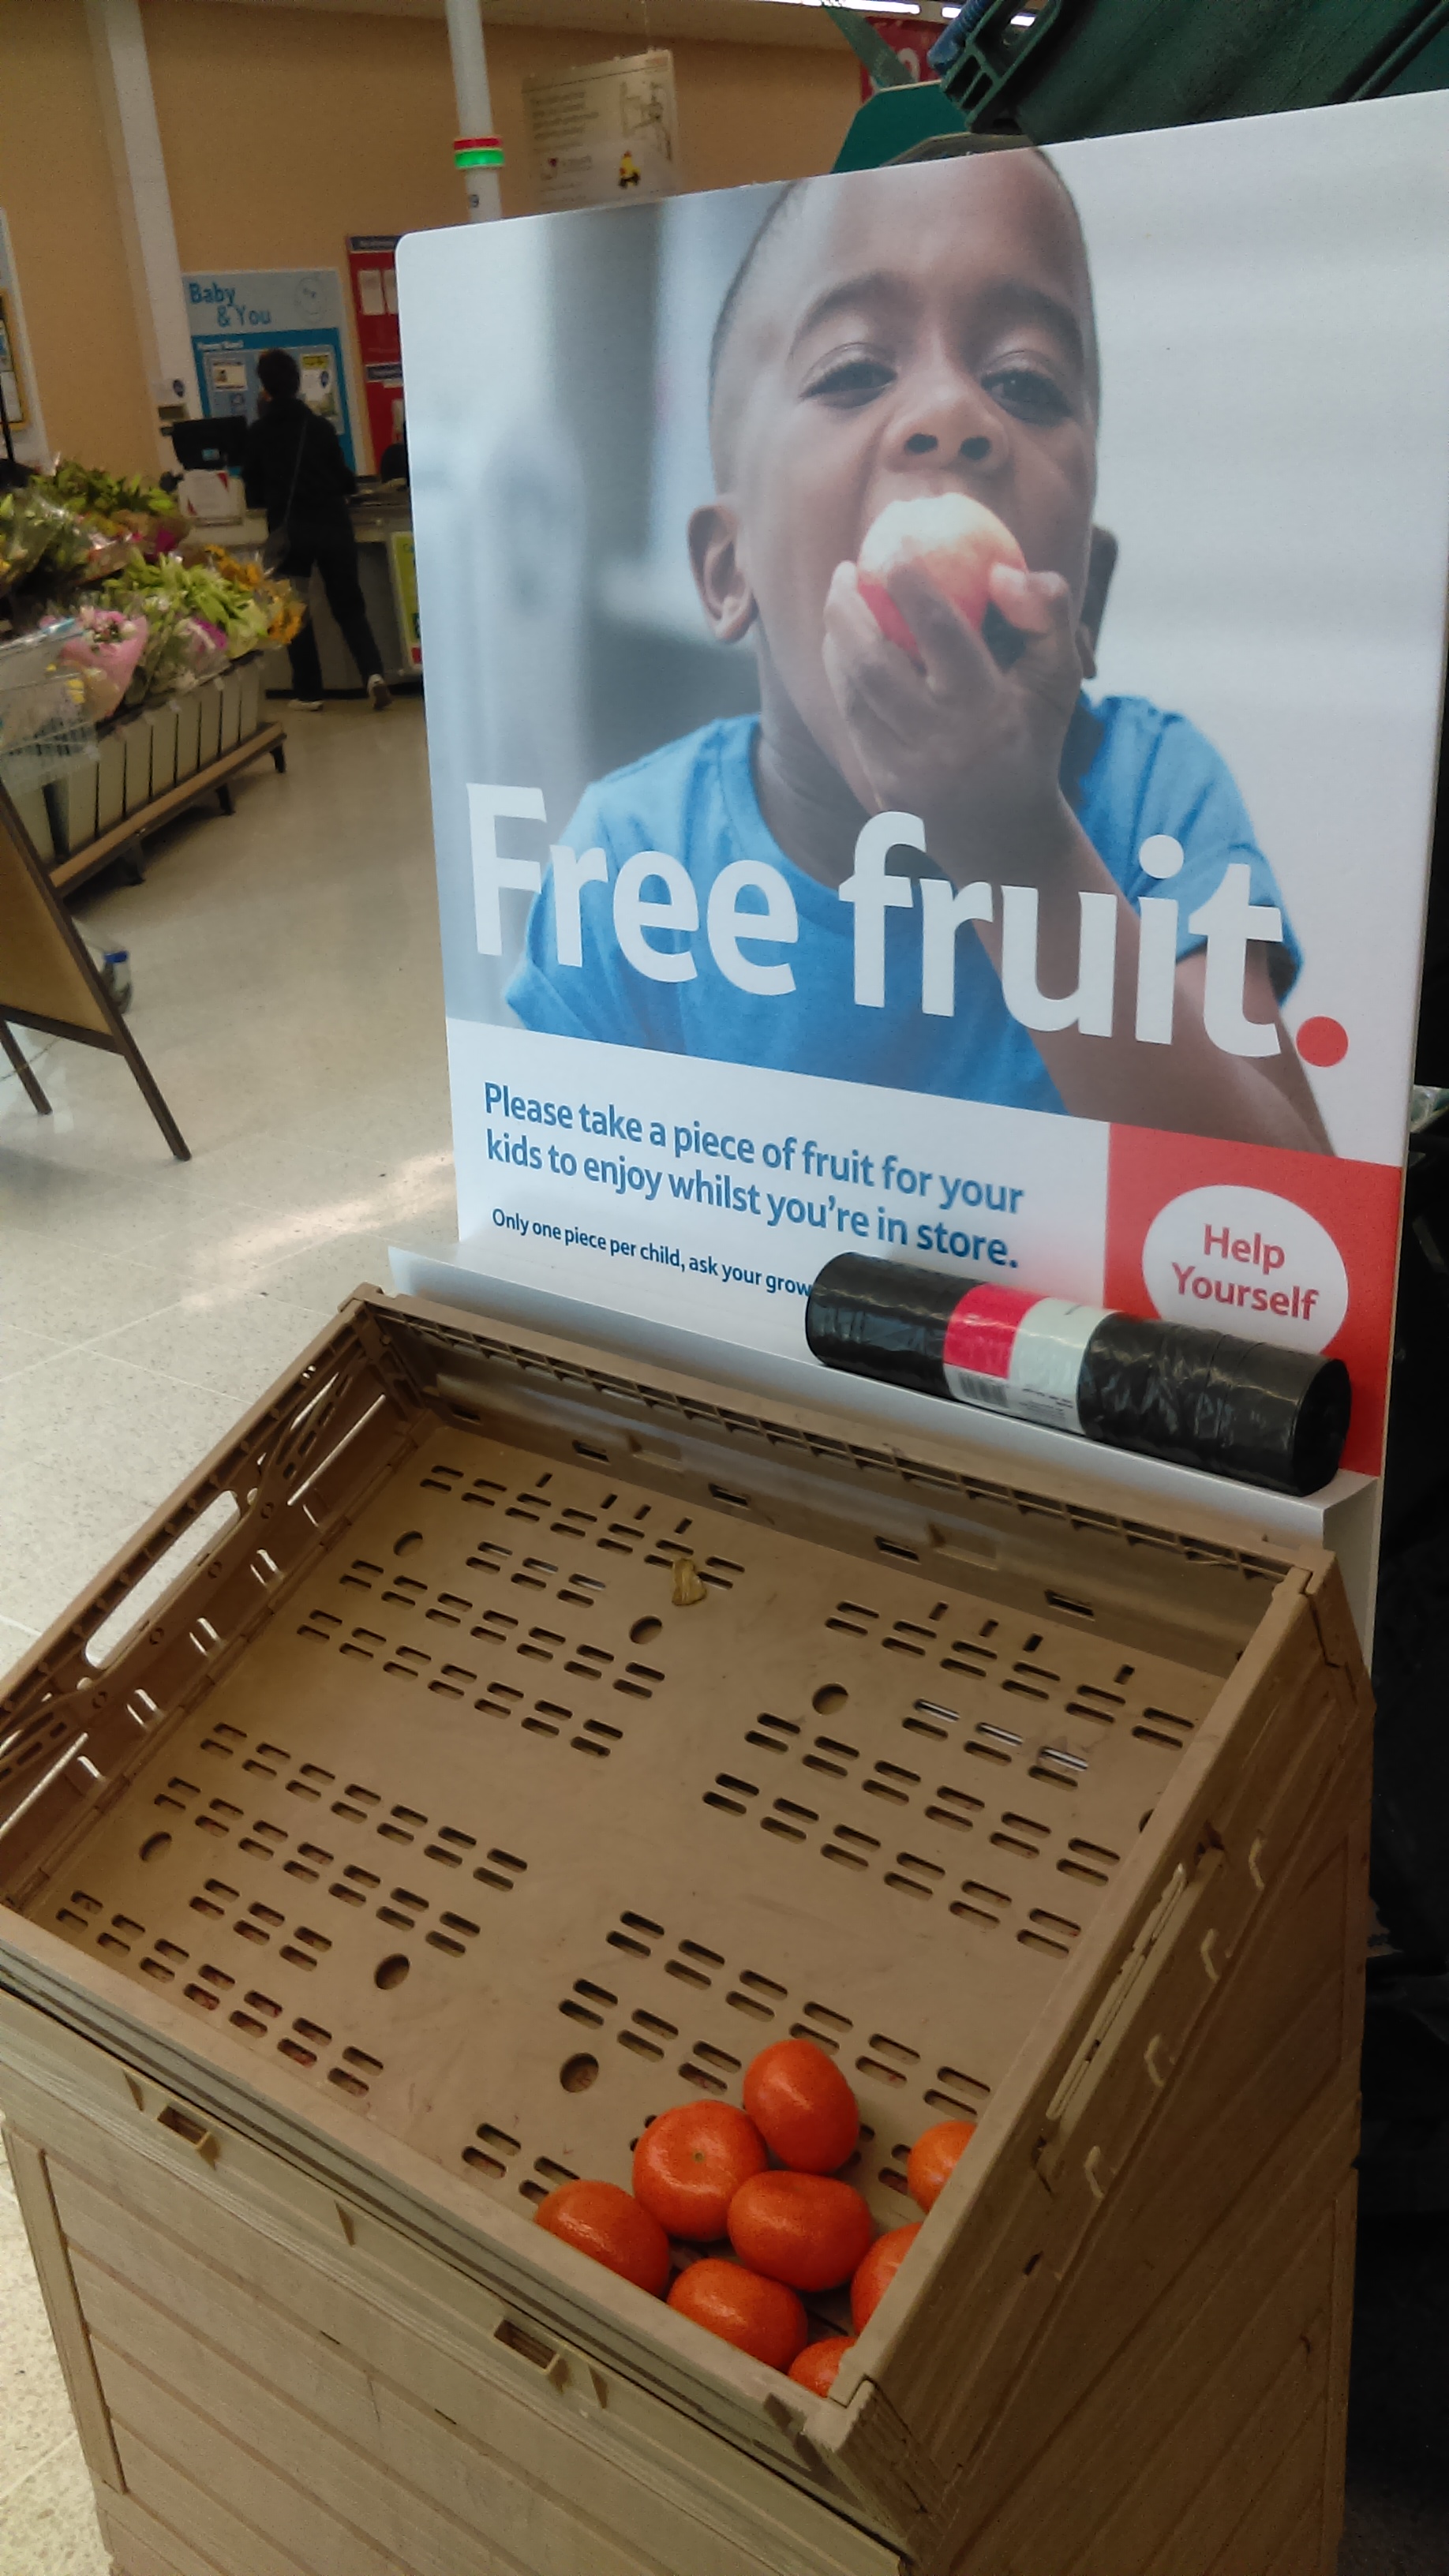 Cartell de fruita gratuïta per a nens en un supermercat TESCO